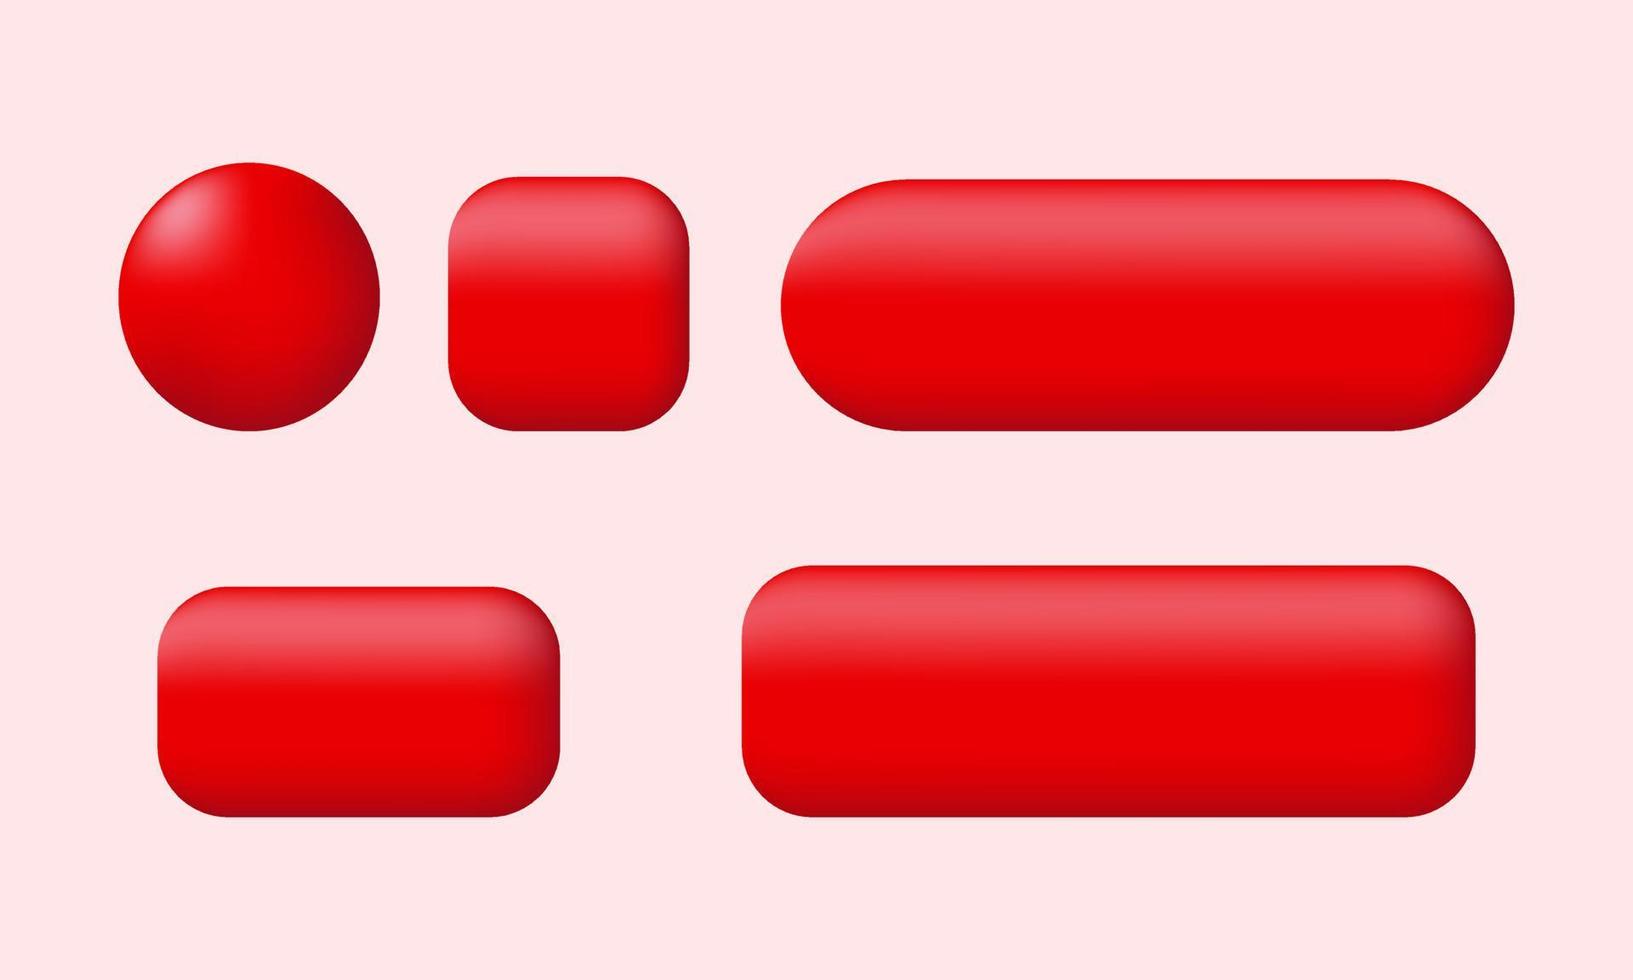 coleção exclusiva de botões vermelhos 3d emaranhada em forma isolada no vetor